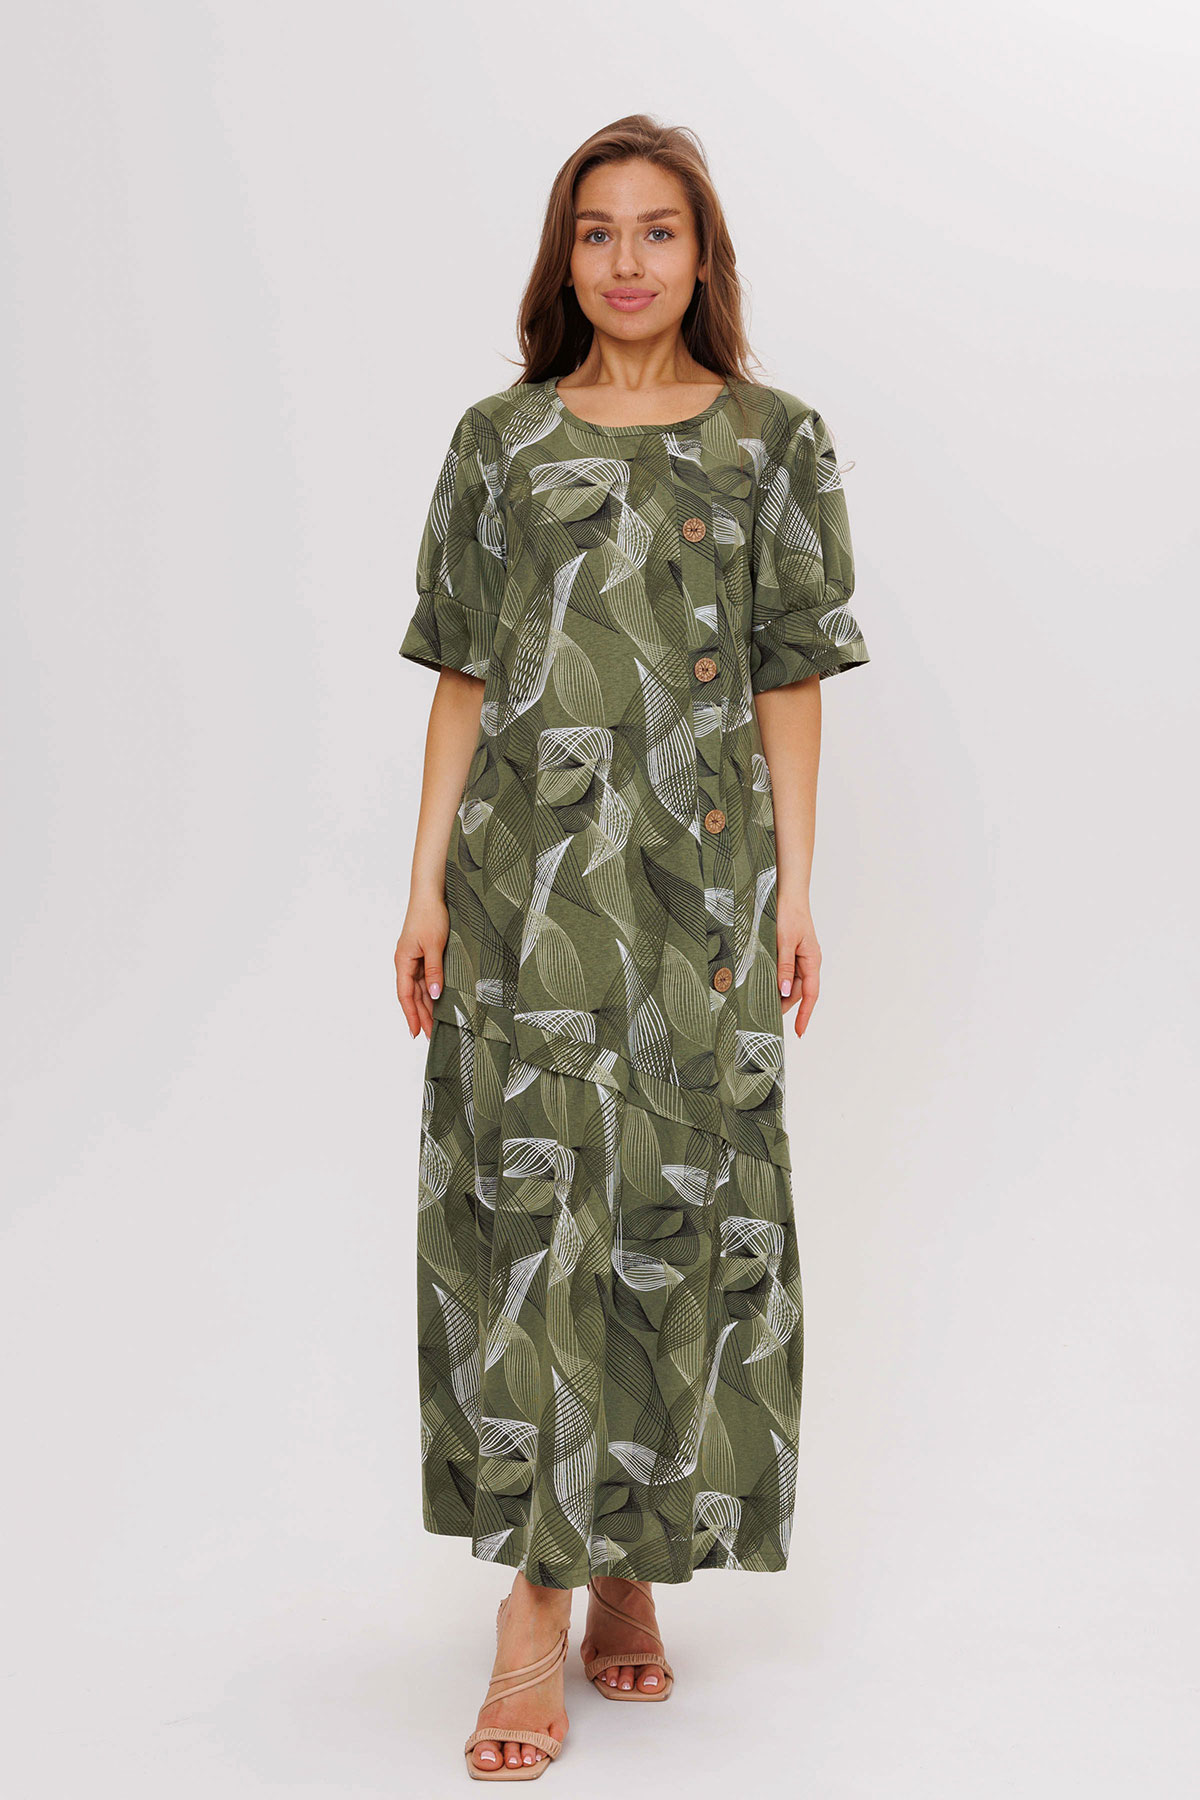 Жен. платье повседневное арт. 23-0541 Зеленый р. 54 Моделлини, размер 54 - фото 10